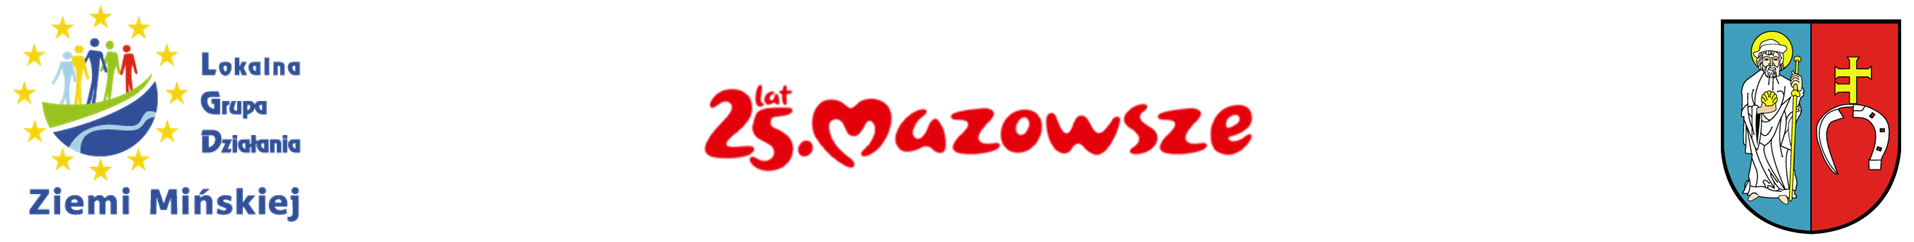 Na logo łódka z charakterystycznymi żaglami: jednym czerwonym a drugim niebieskim. Łódź posiada proste, nowoczesne linie, co nadaje logo współczesnego wyglądu.